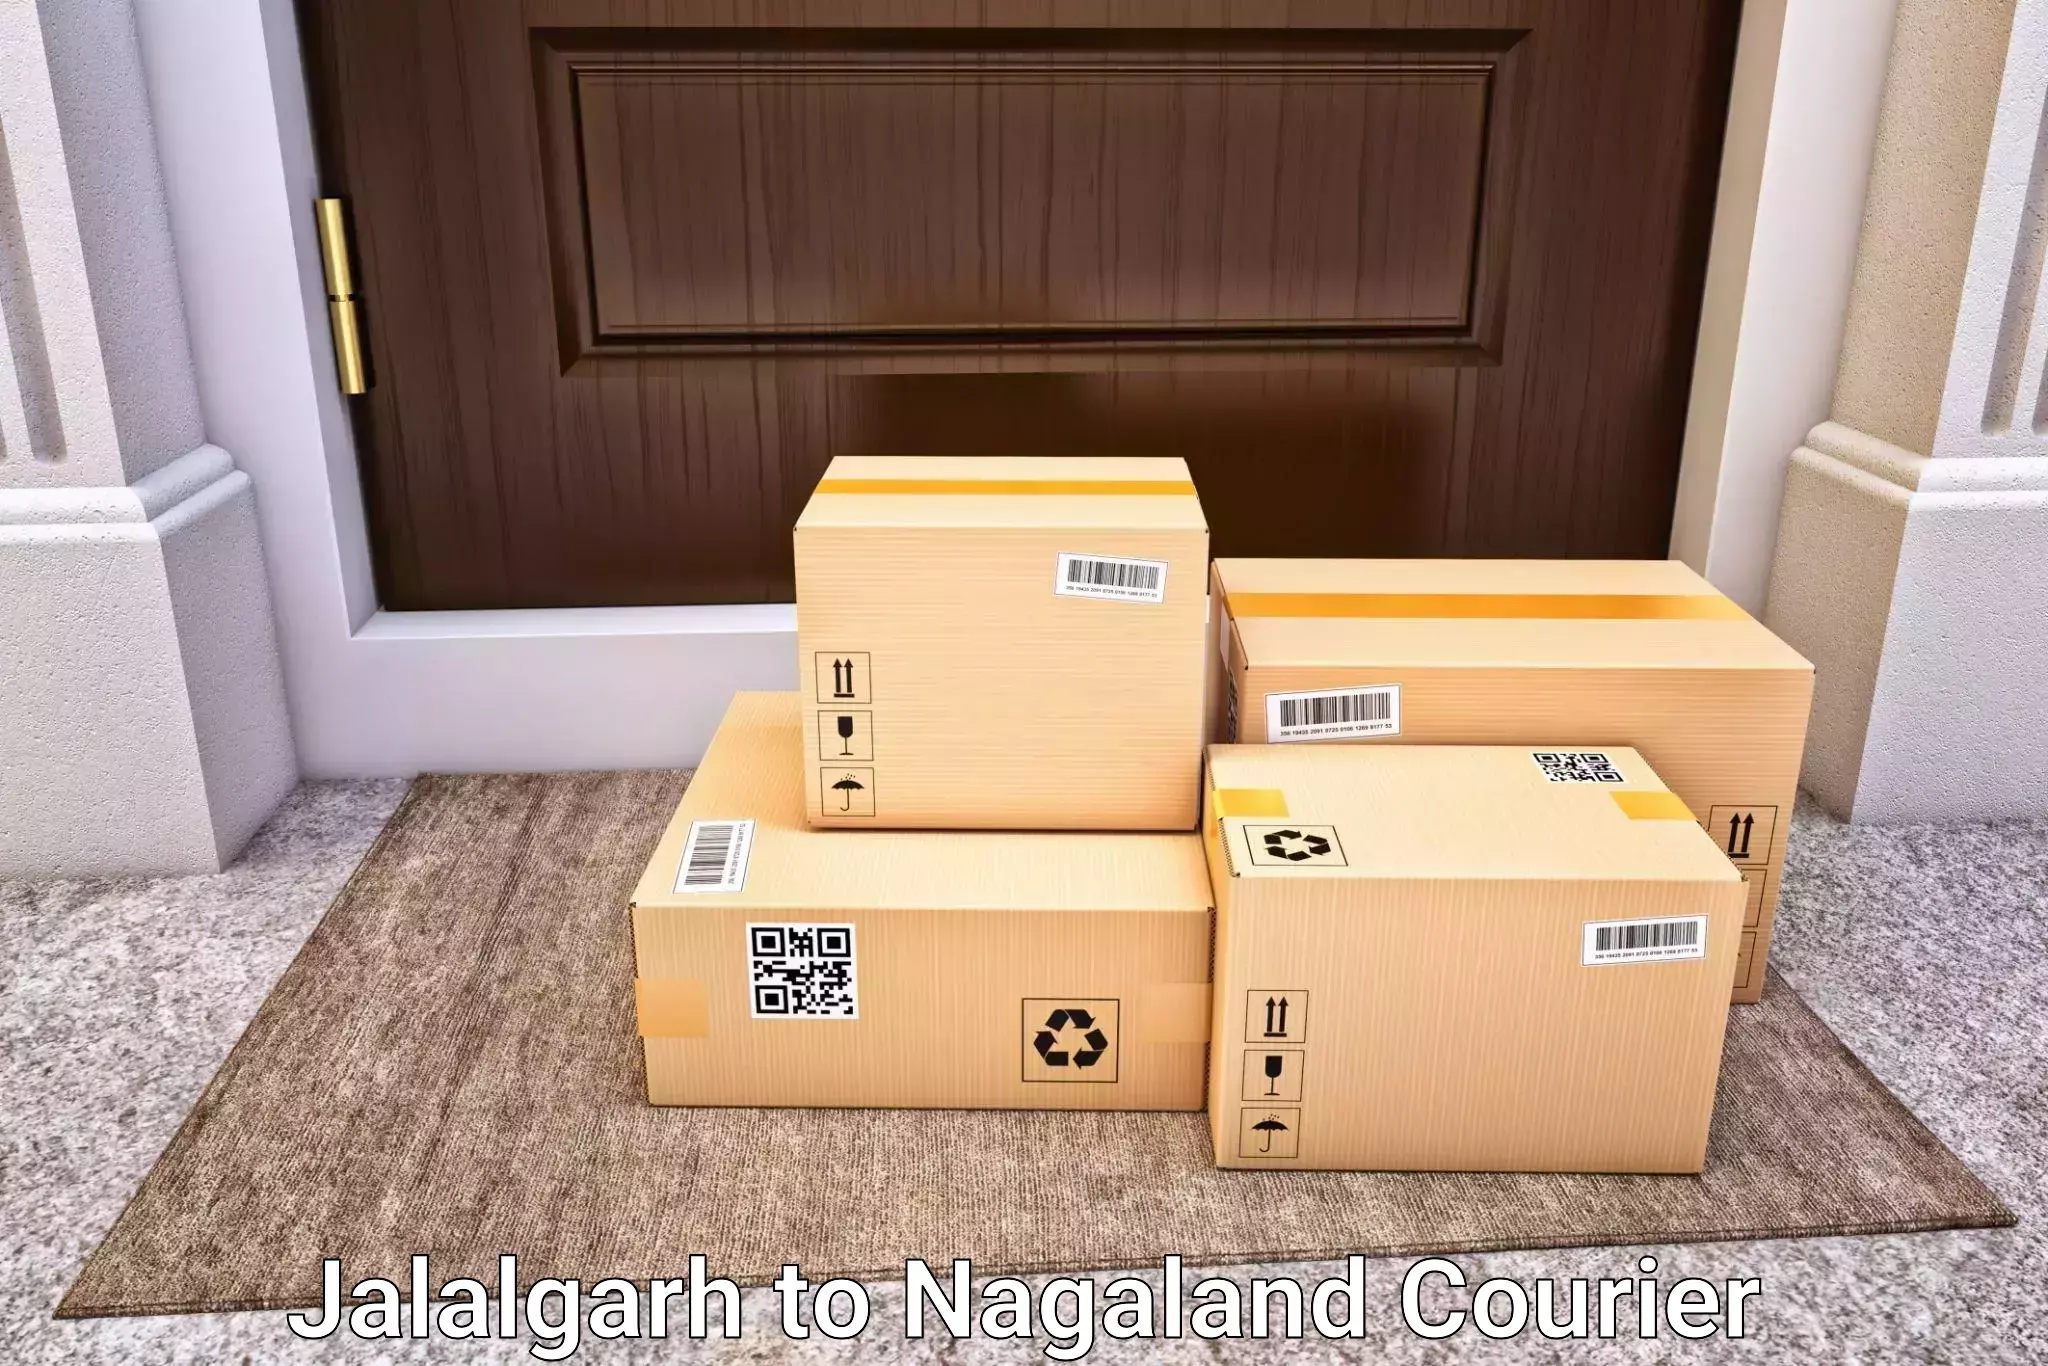 Luggage transport company Jalalgarh to NIT Nagaland